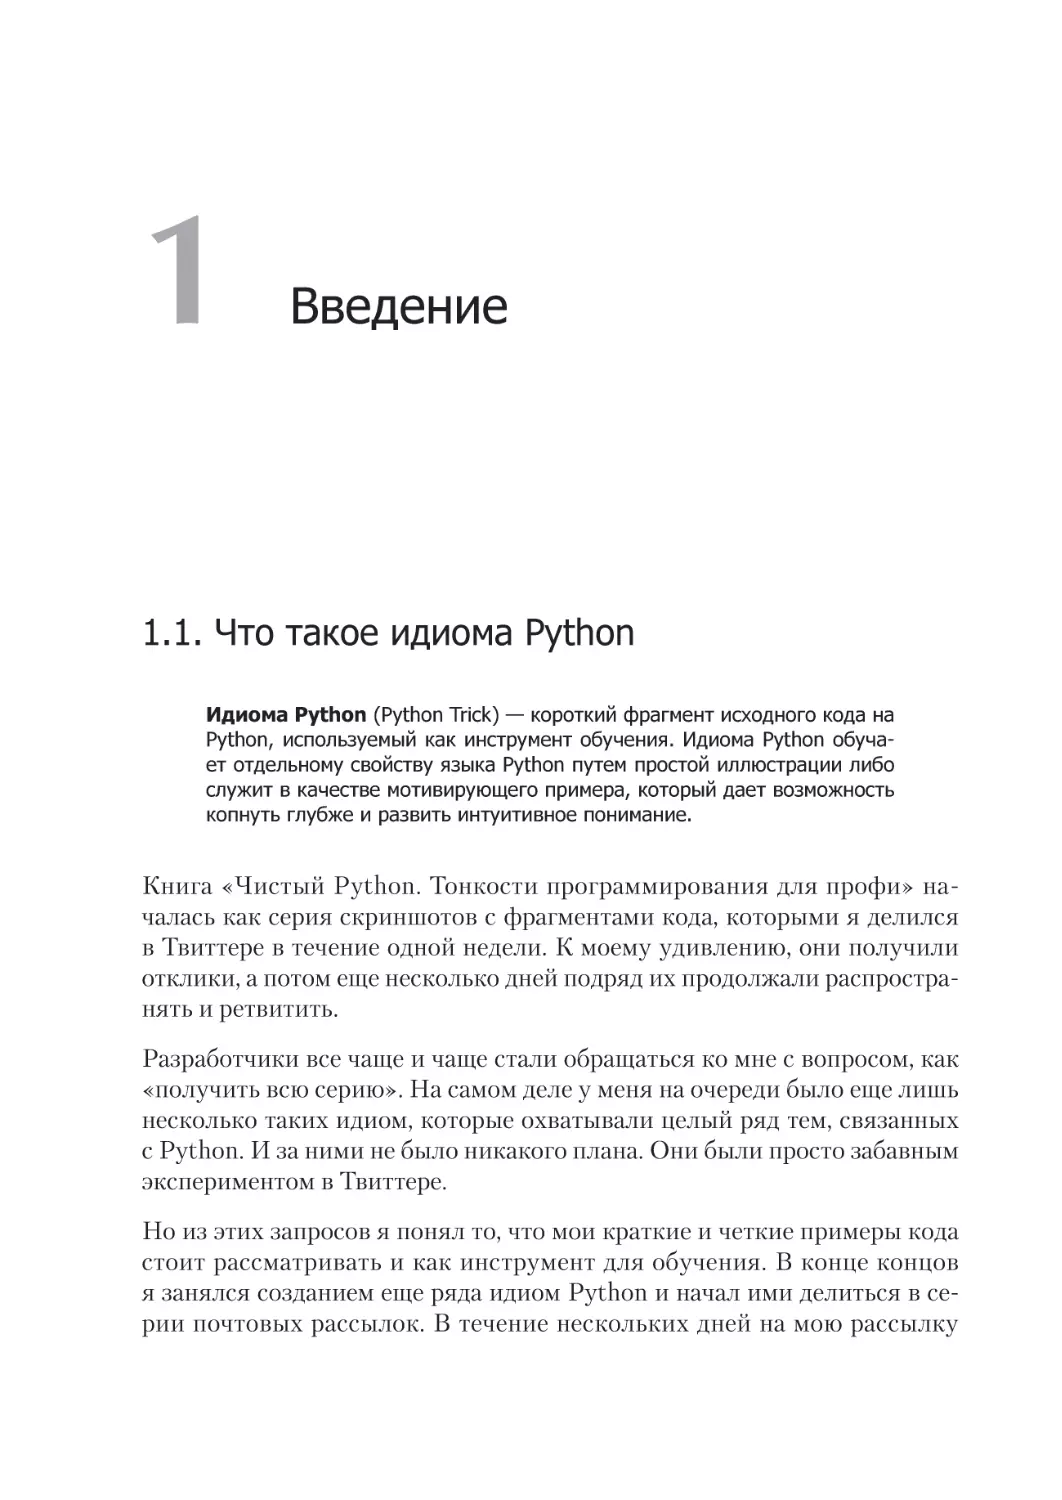 Глава 1. Введение
1.1. Что такое идиома Python